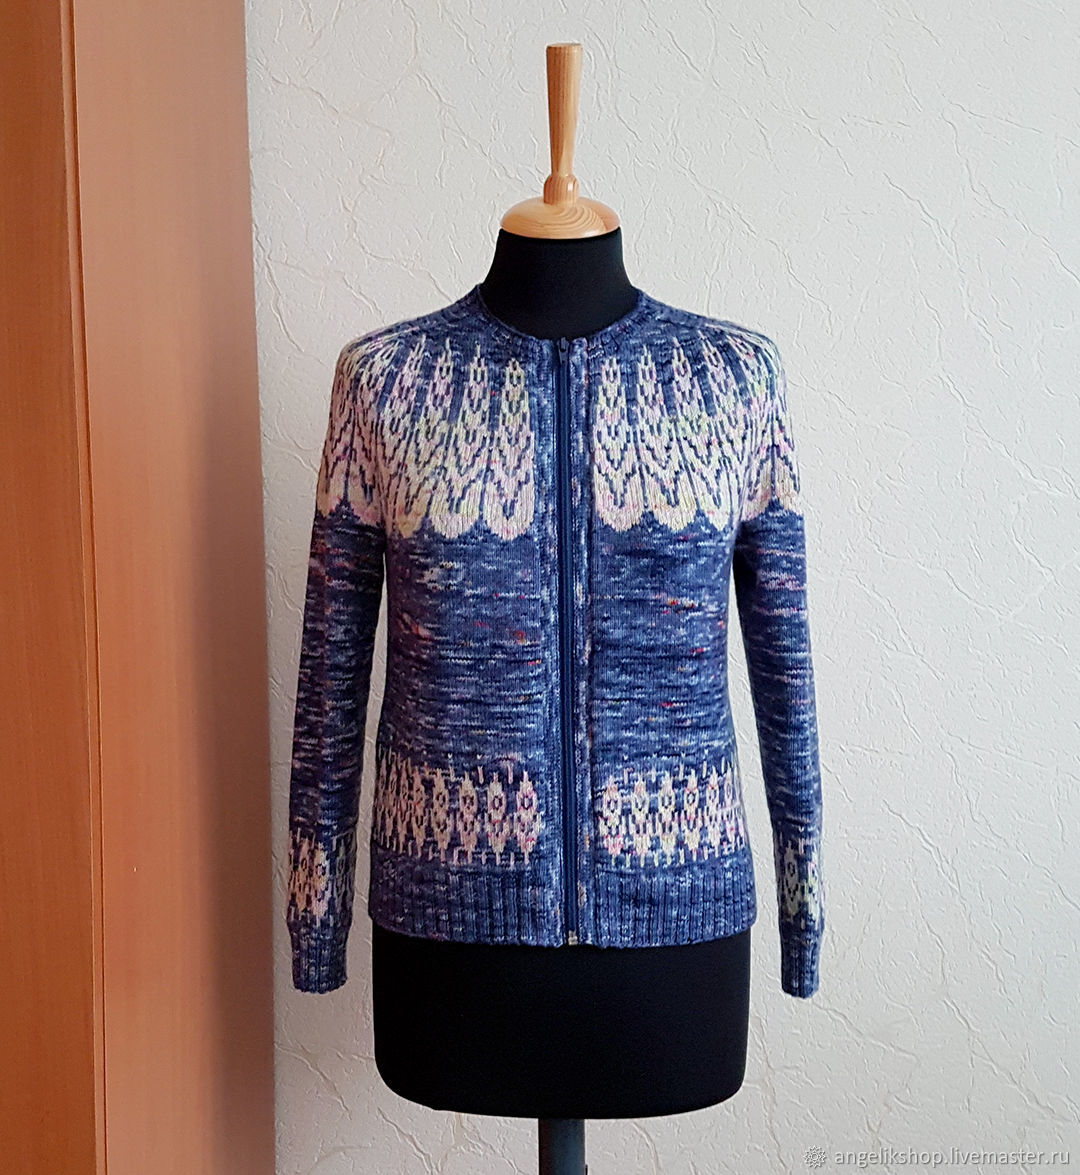 61 женский свитер оверсайз спицами — с ОПИСАНИЕМ